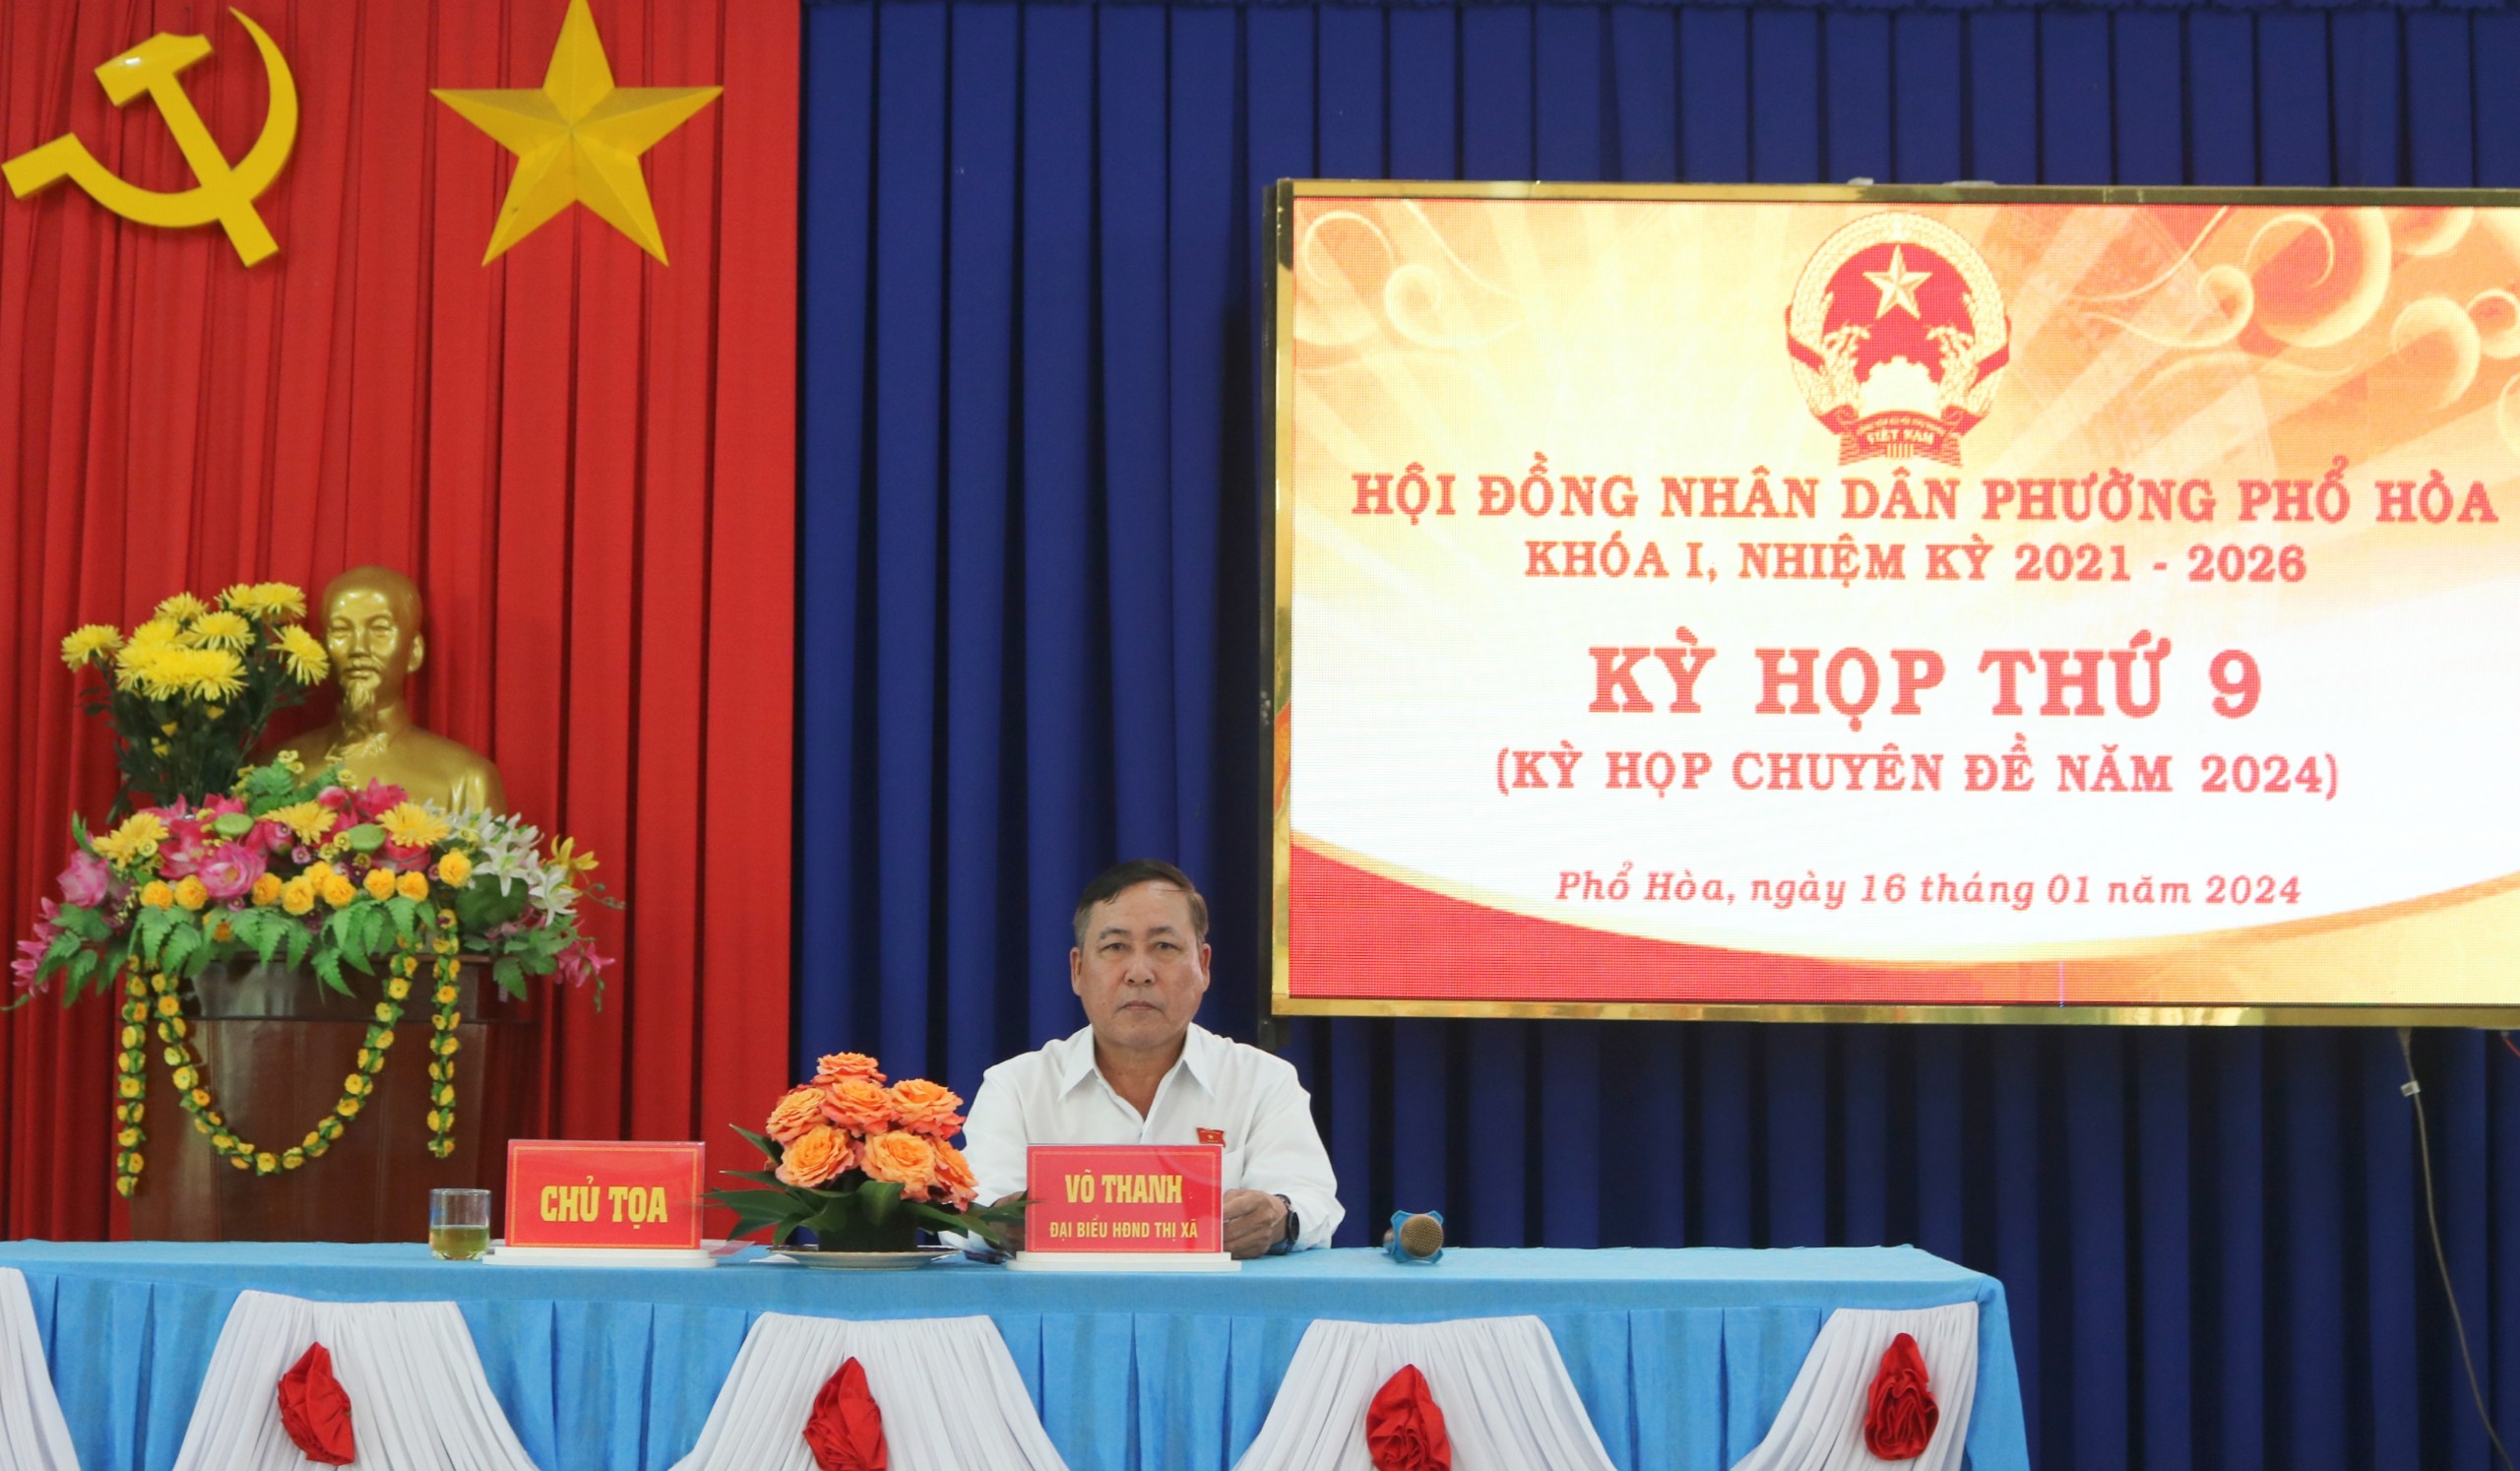 HĐND phường Phổ Hòa tổ chức kỳ họp chuyên bầu bổ sung chức danh Phó Chủ tịch HĐND phường